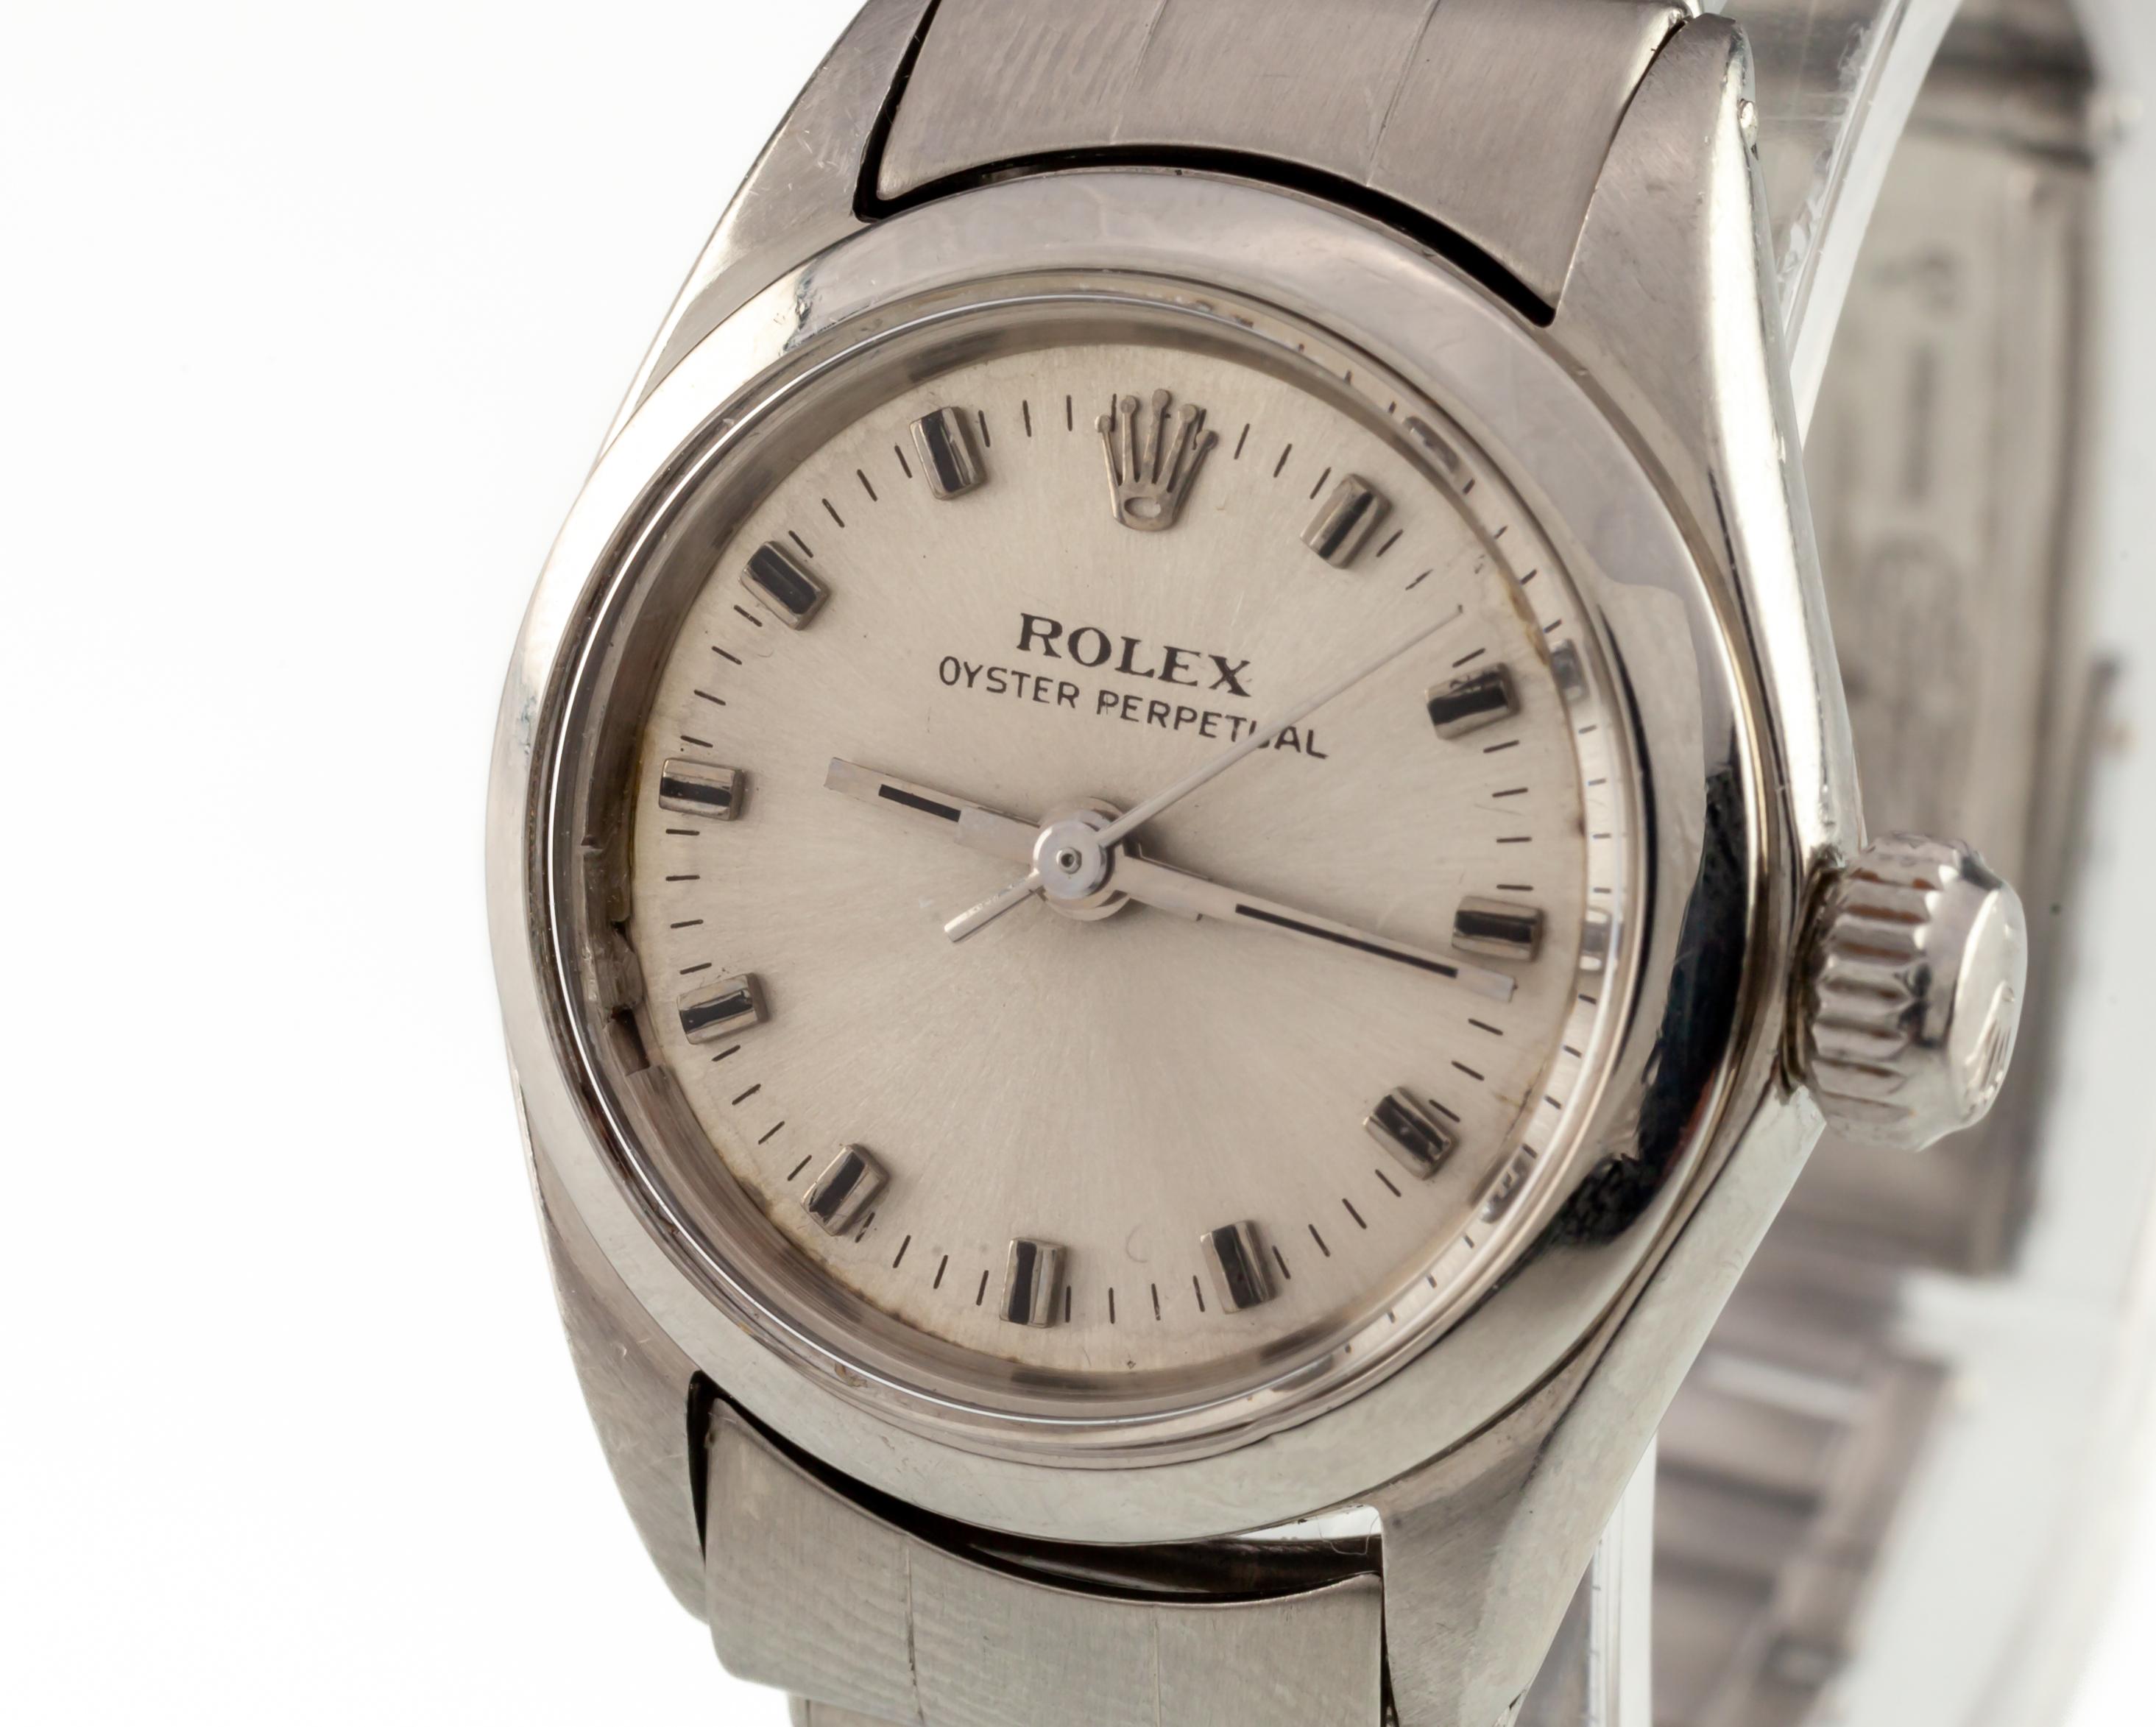 Rolex Damen Edelstahl Oyster Perpetual Watch #6618 1969 Vintage

Modell #6618
Seriennummer 20712XX
Jahr: 1969
Bewegung #1161
Uhrwerk Seriennummer 265XX
26 Juwelen

Rundes Gehäuse aus Edelstahl
26 mm Durchmesser
Abstand Lug-to-Lug = 31 mm
Breite von